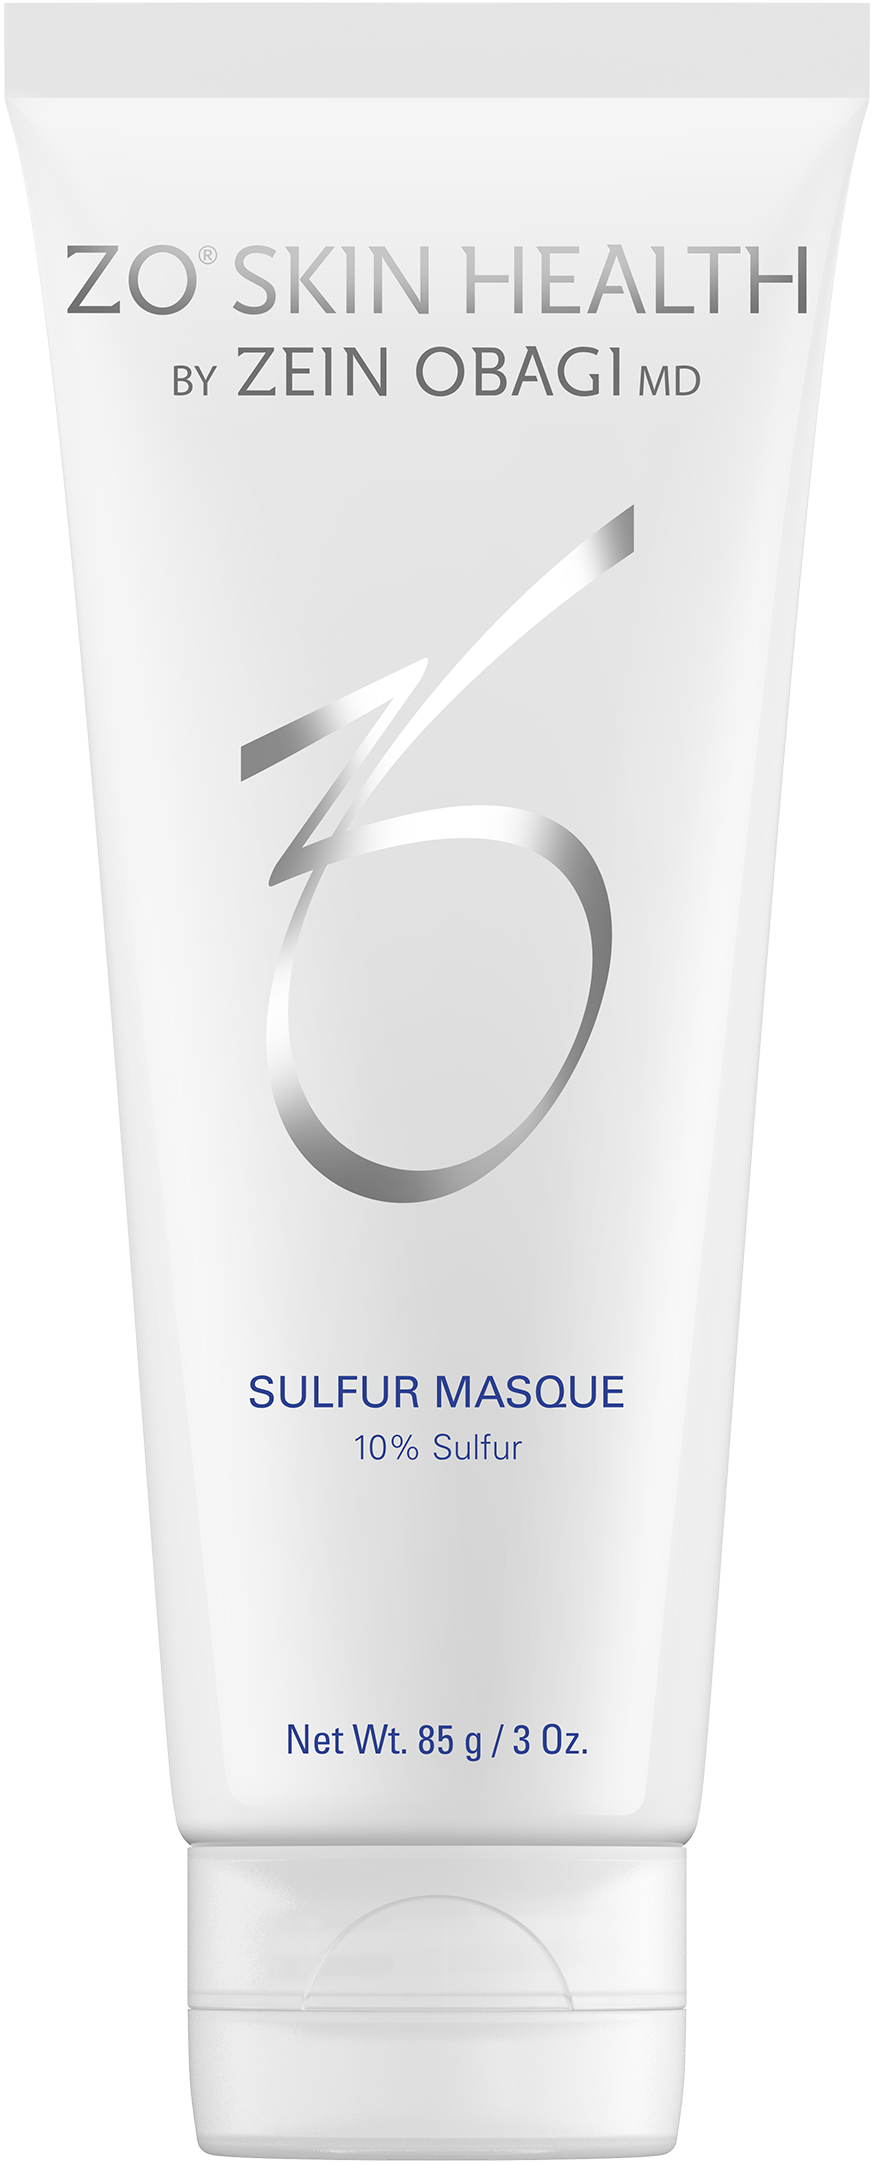 Sulfur Masque - Avebelle Skin